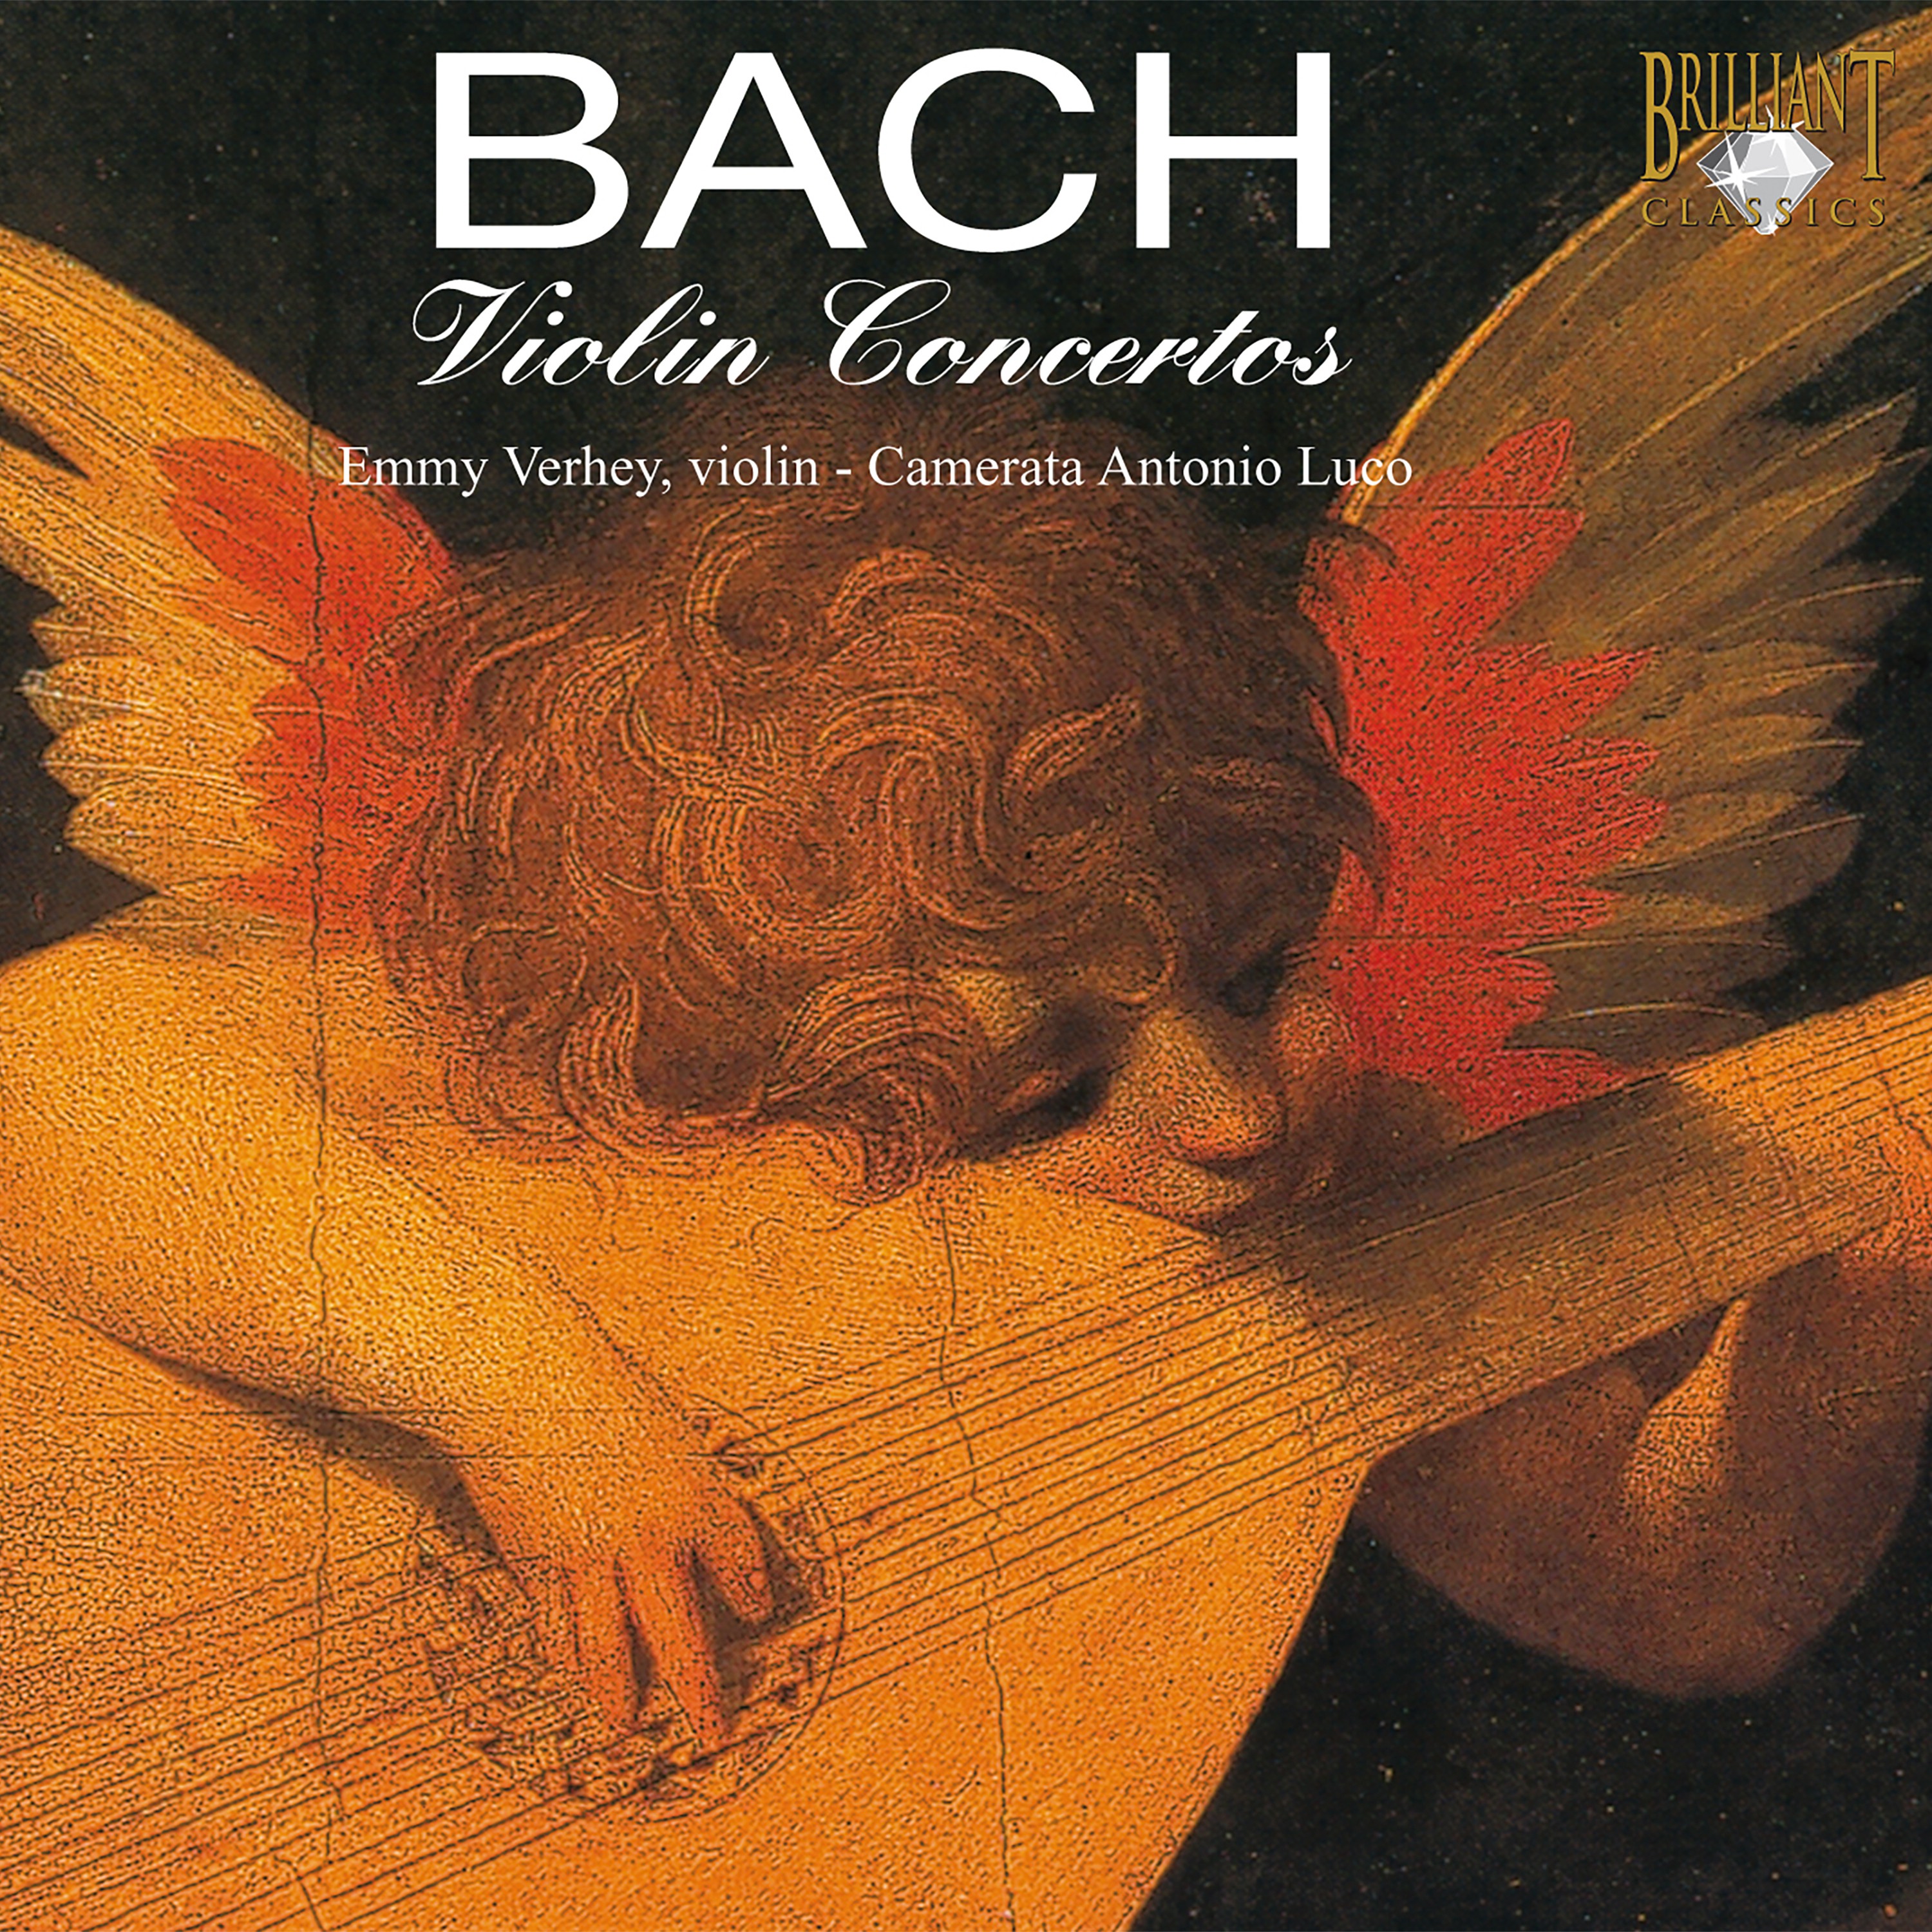 Violin Concerto in E Major, BWV 1042: Allegro